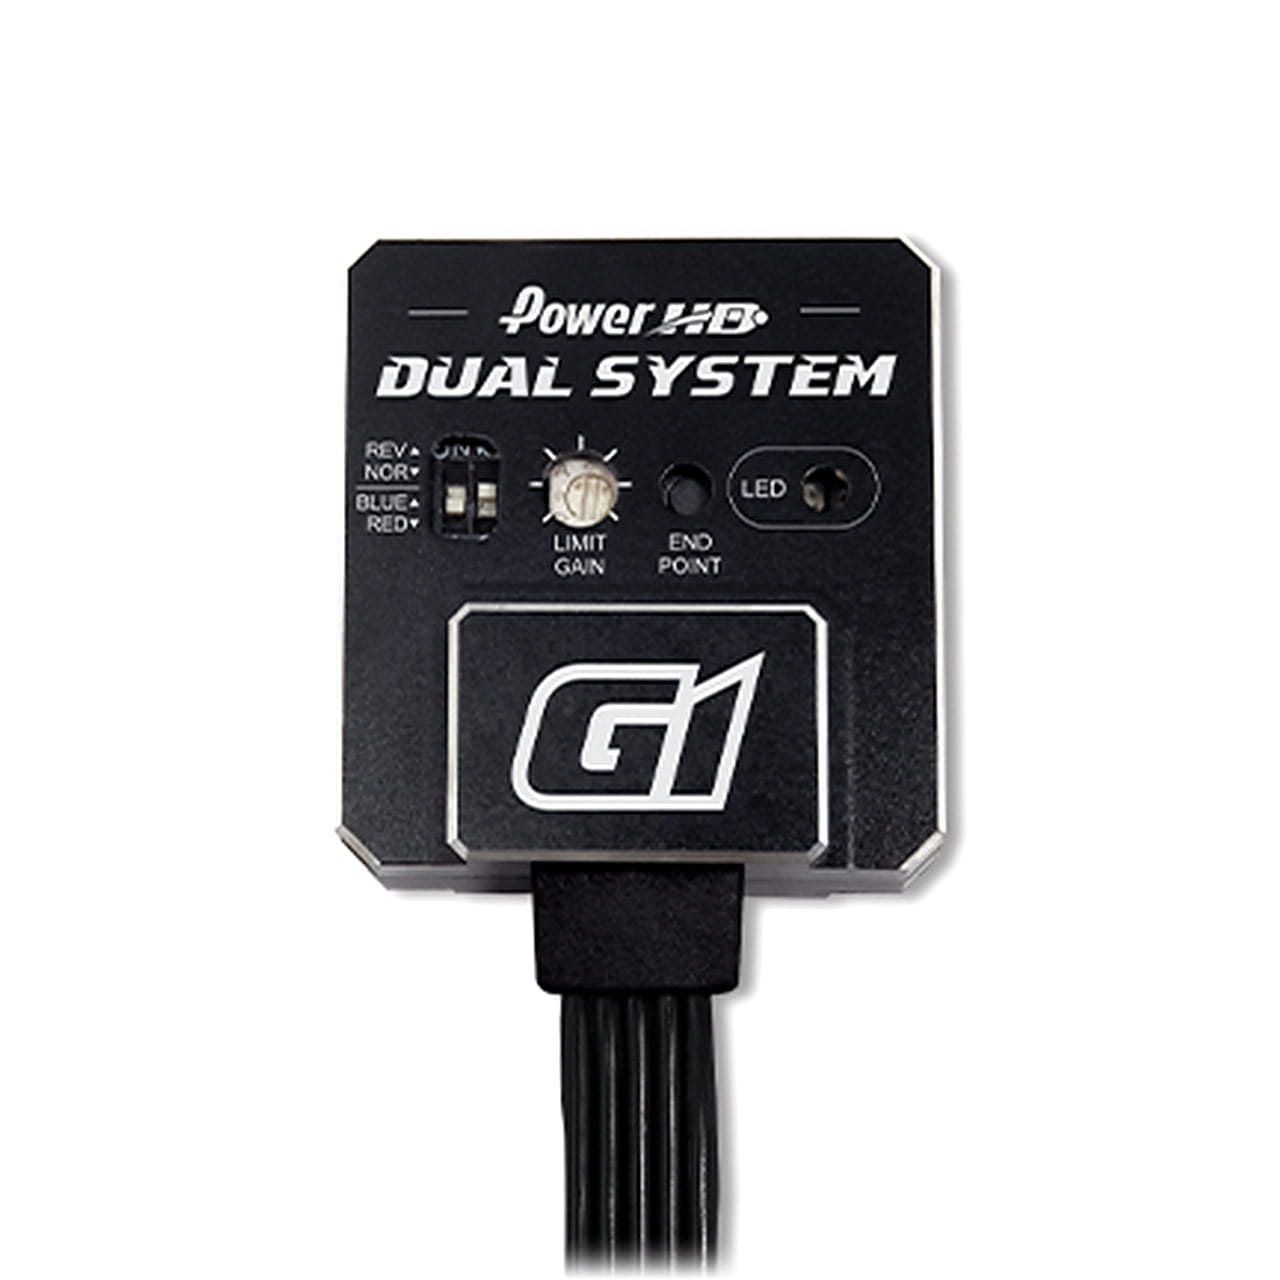 Power HD gyro-g1-silber